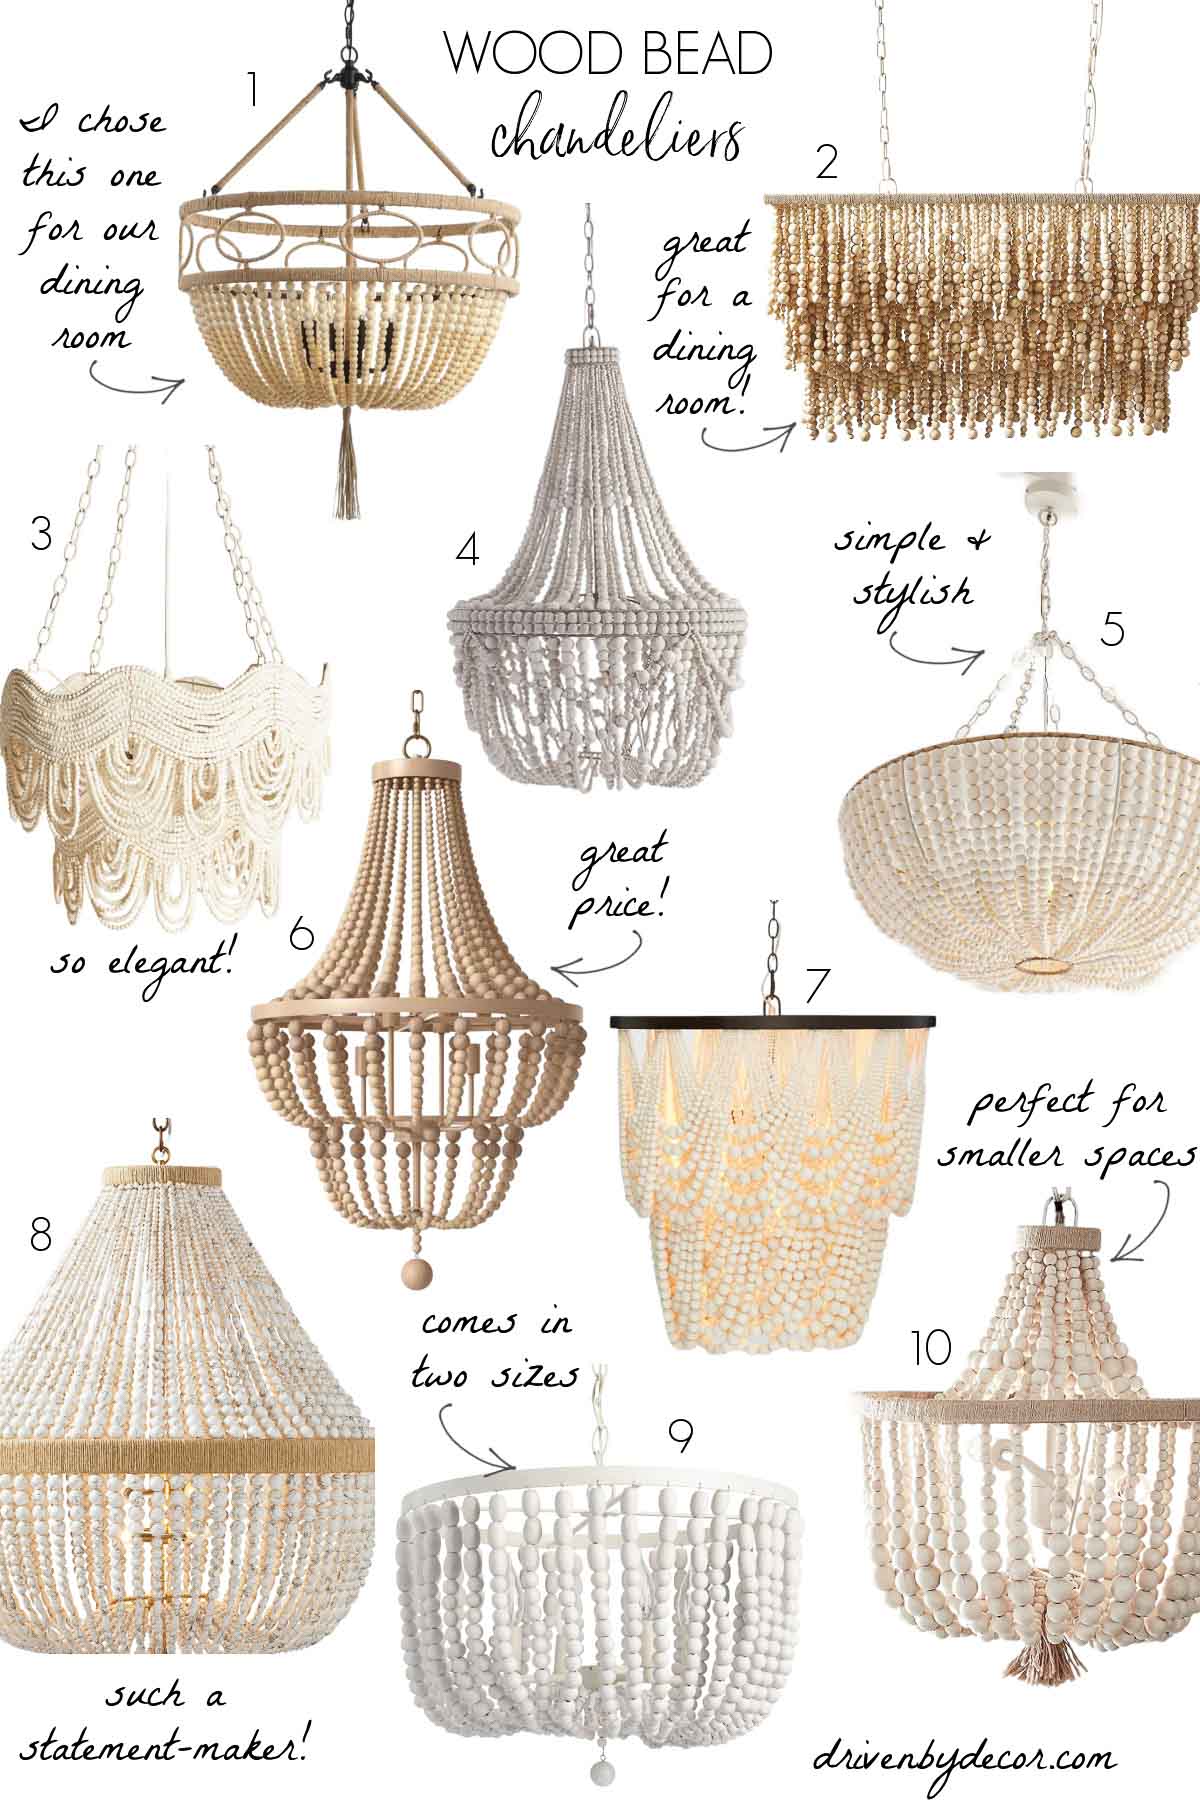 My favorite wood bead chandeliers!